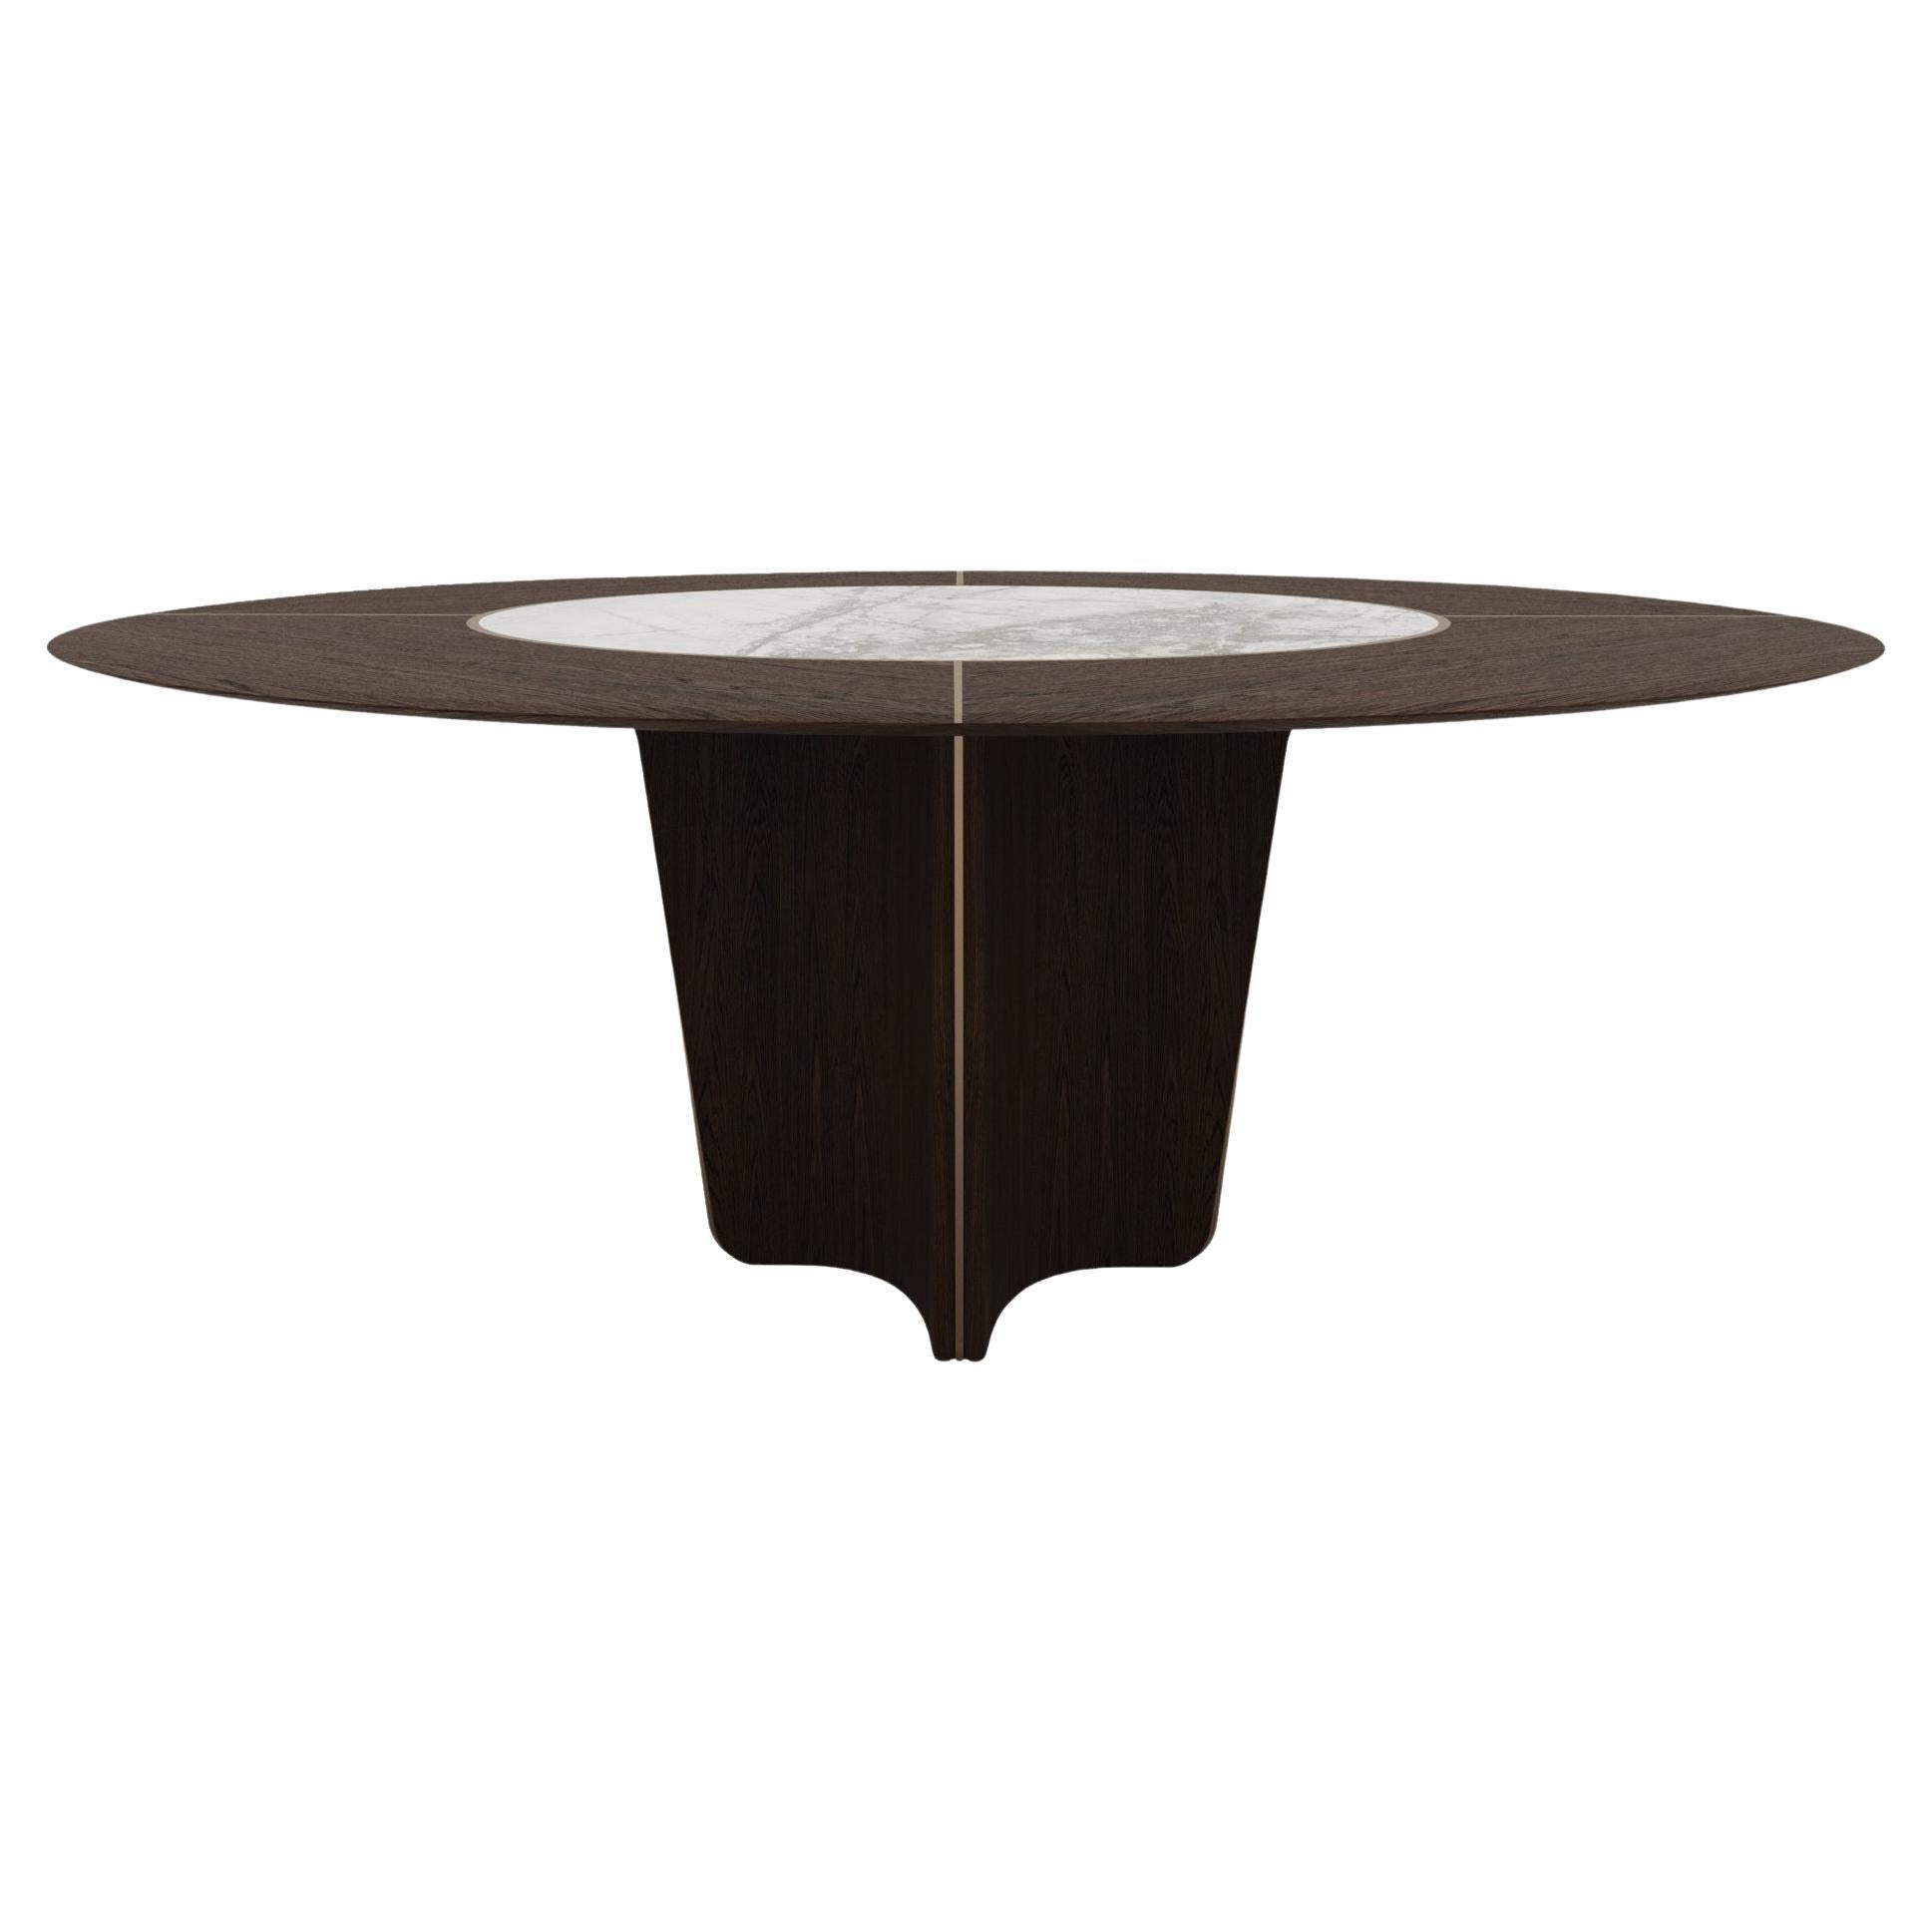 Estella Round Table Design By Mehmet Orel for Capella